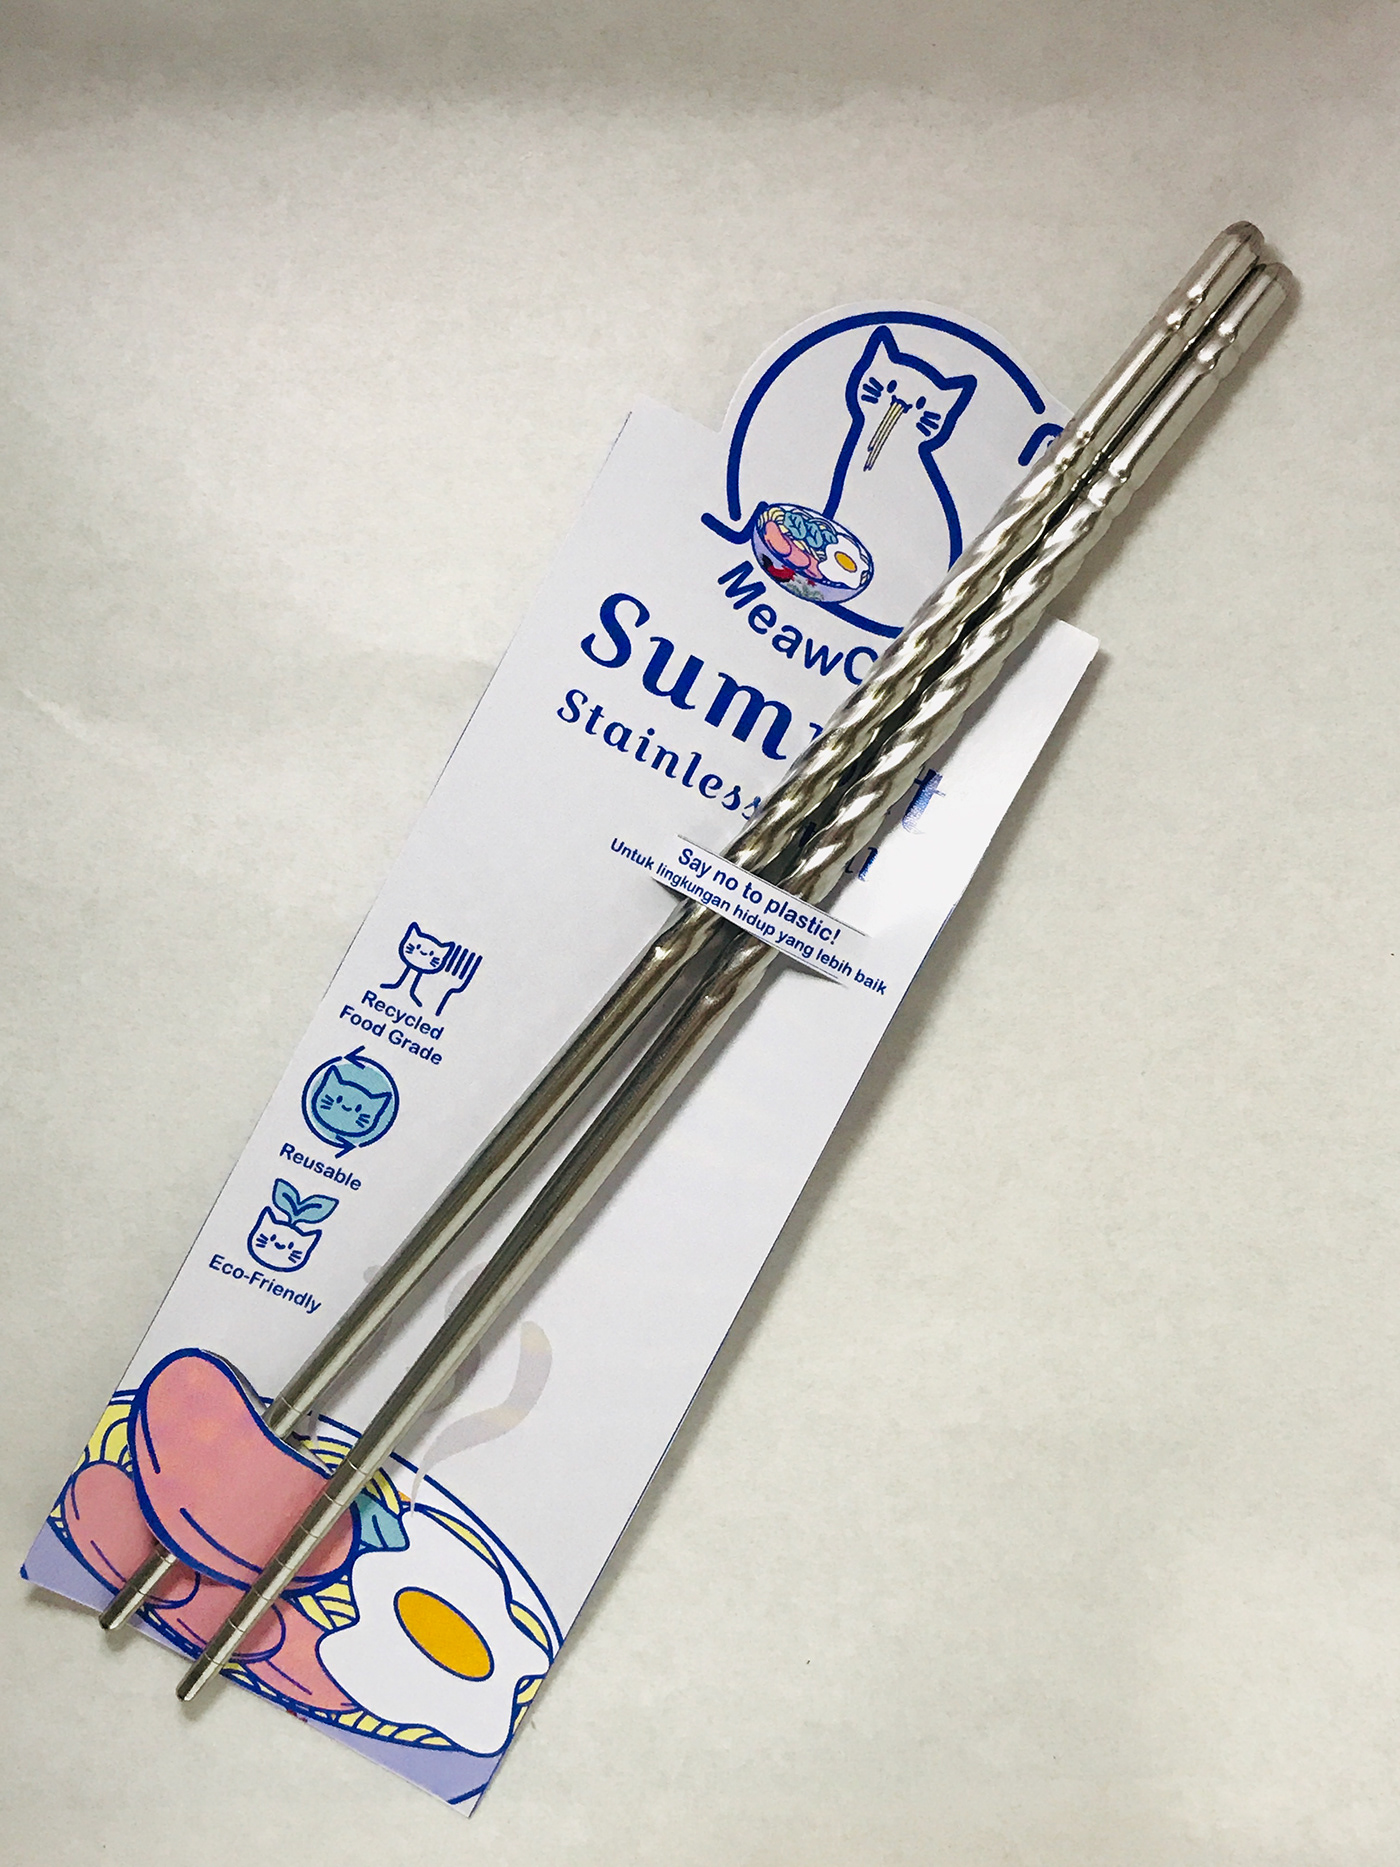 Packaging chopsticks